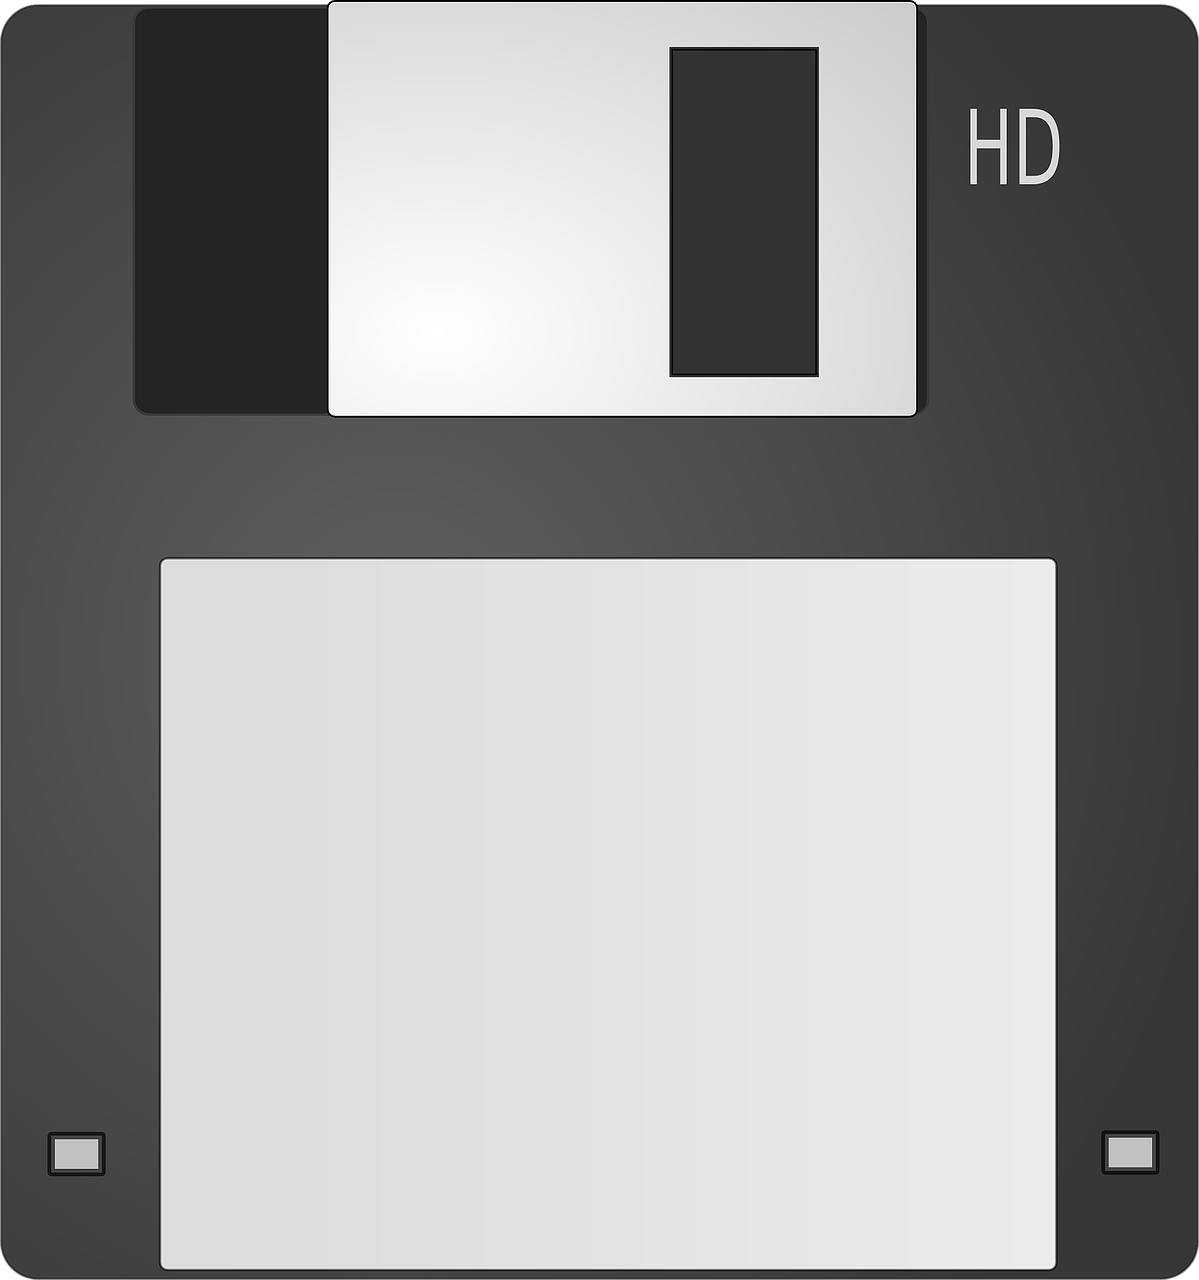 floppy disc floppy storage free photo